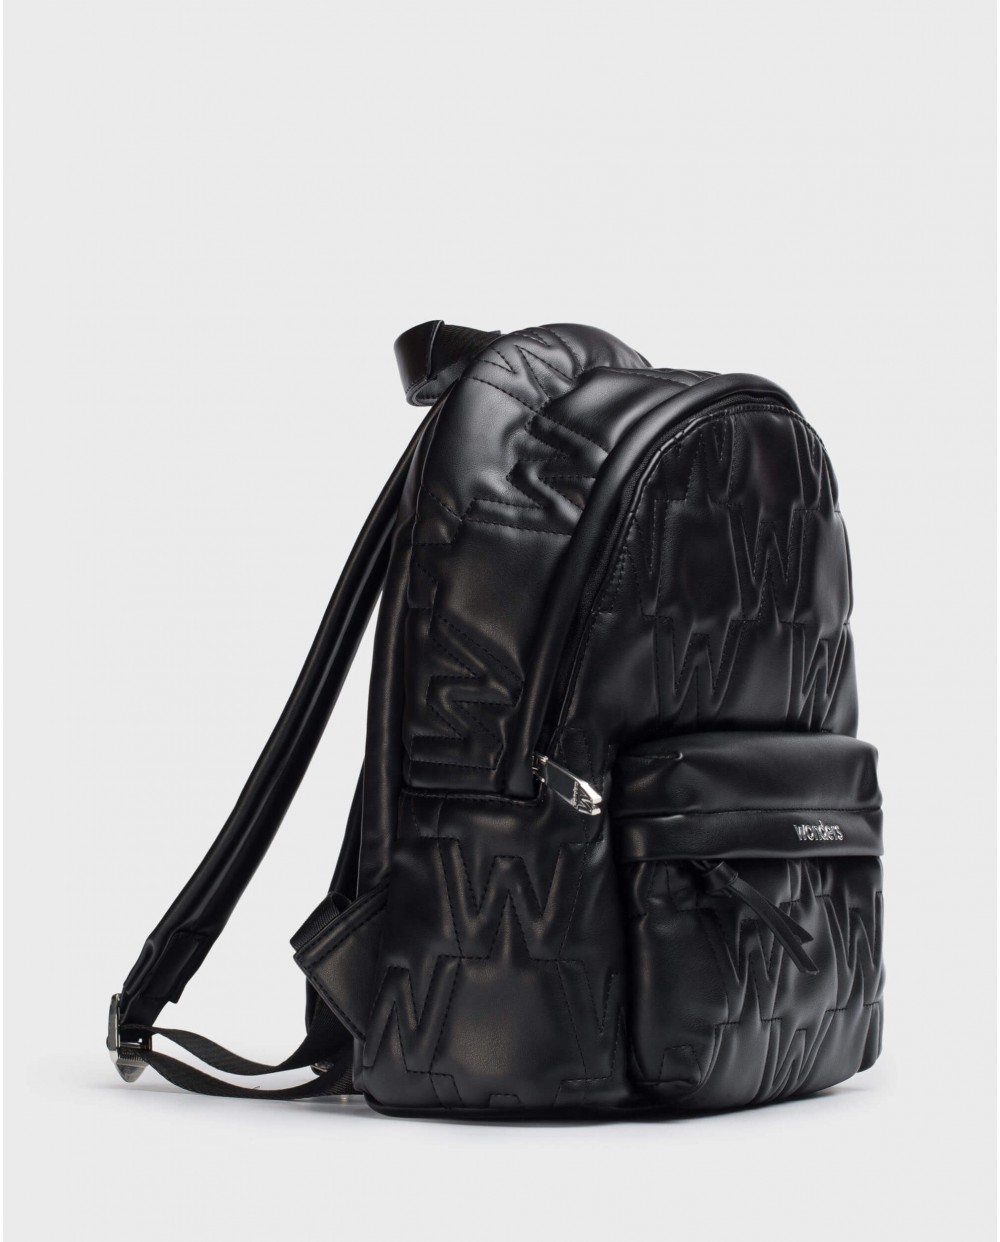 Black school backpack